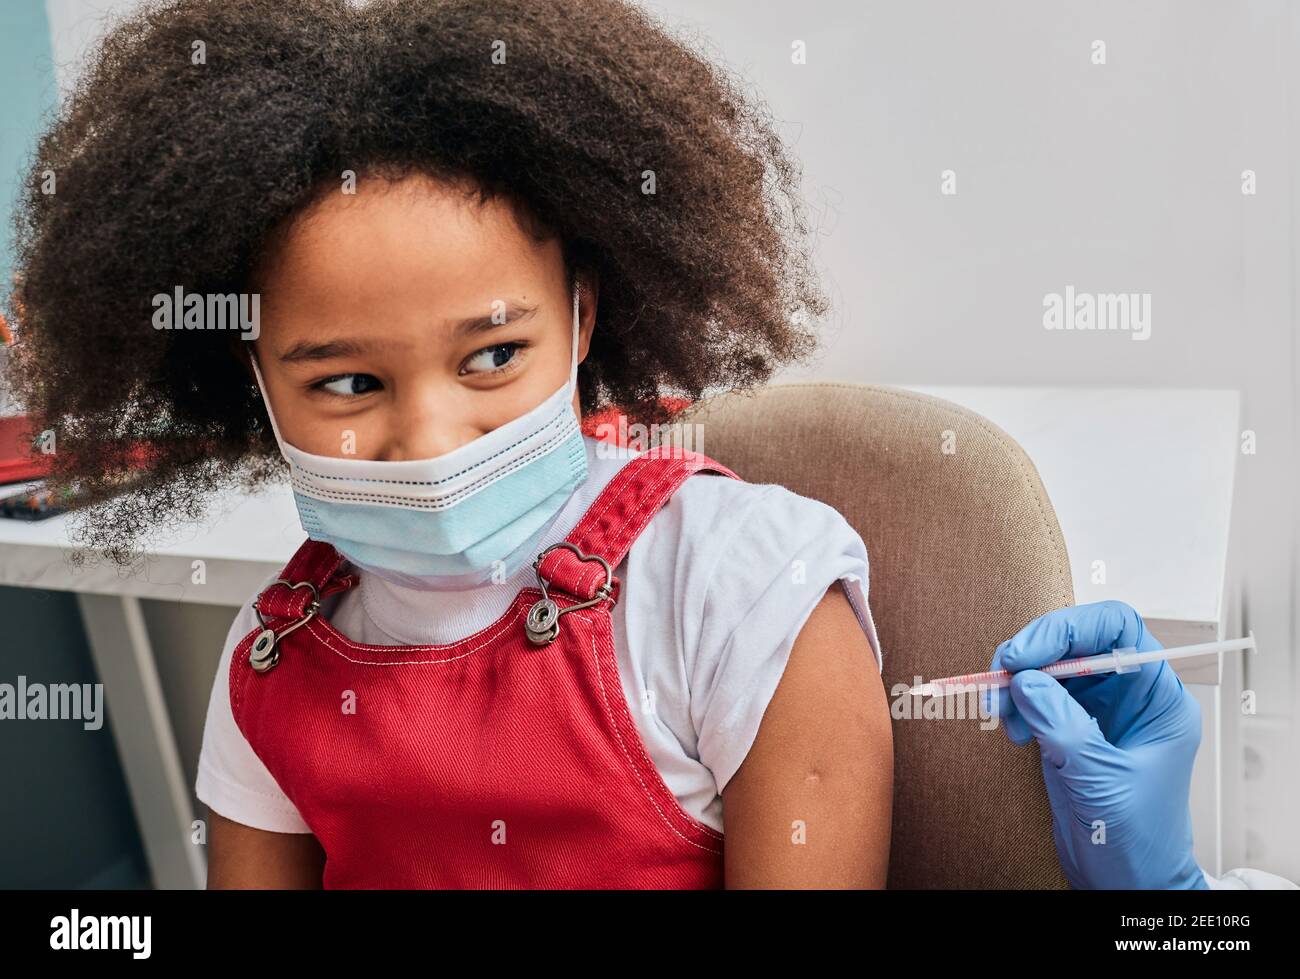 L'enfant a très peur des injections pendant le vaccin au centre médical Banque D'Images